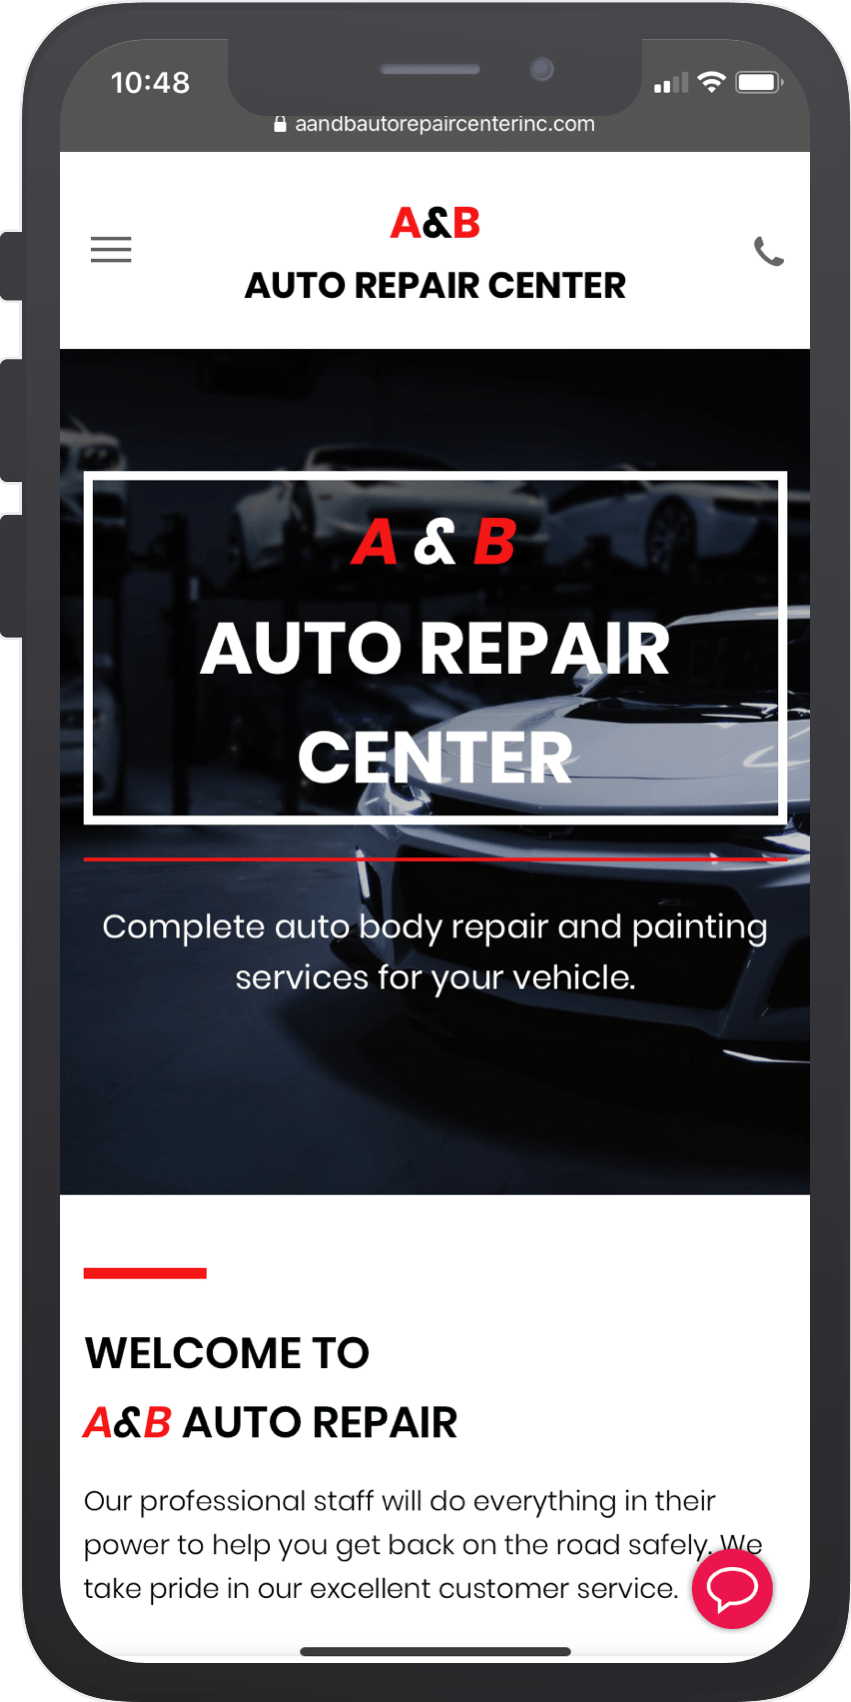 A&B Auto Repair Center